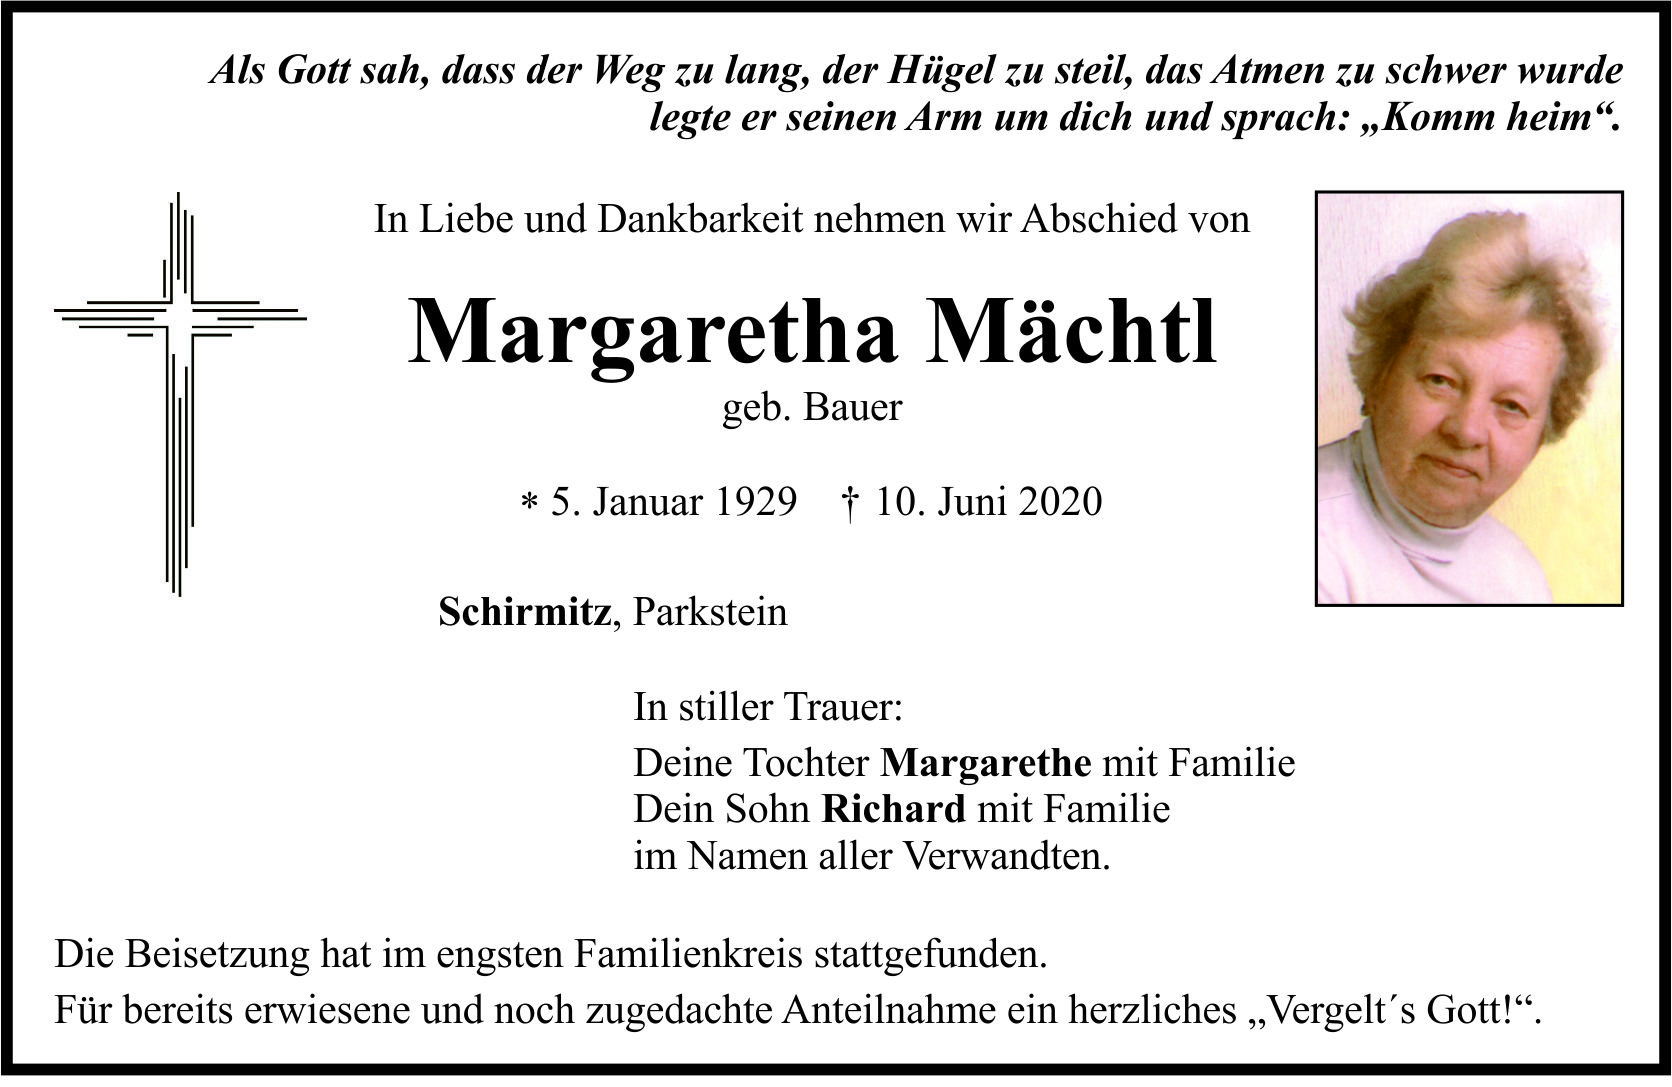 Traueranzeige Margaretha Mächtl, Schirmitz Parkstein